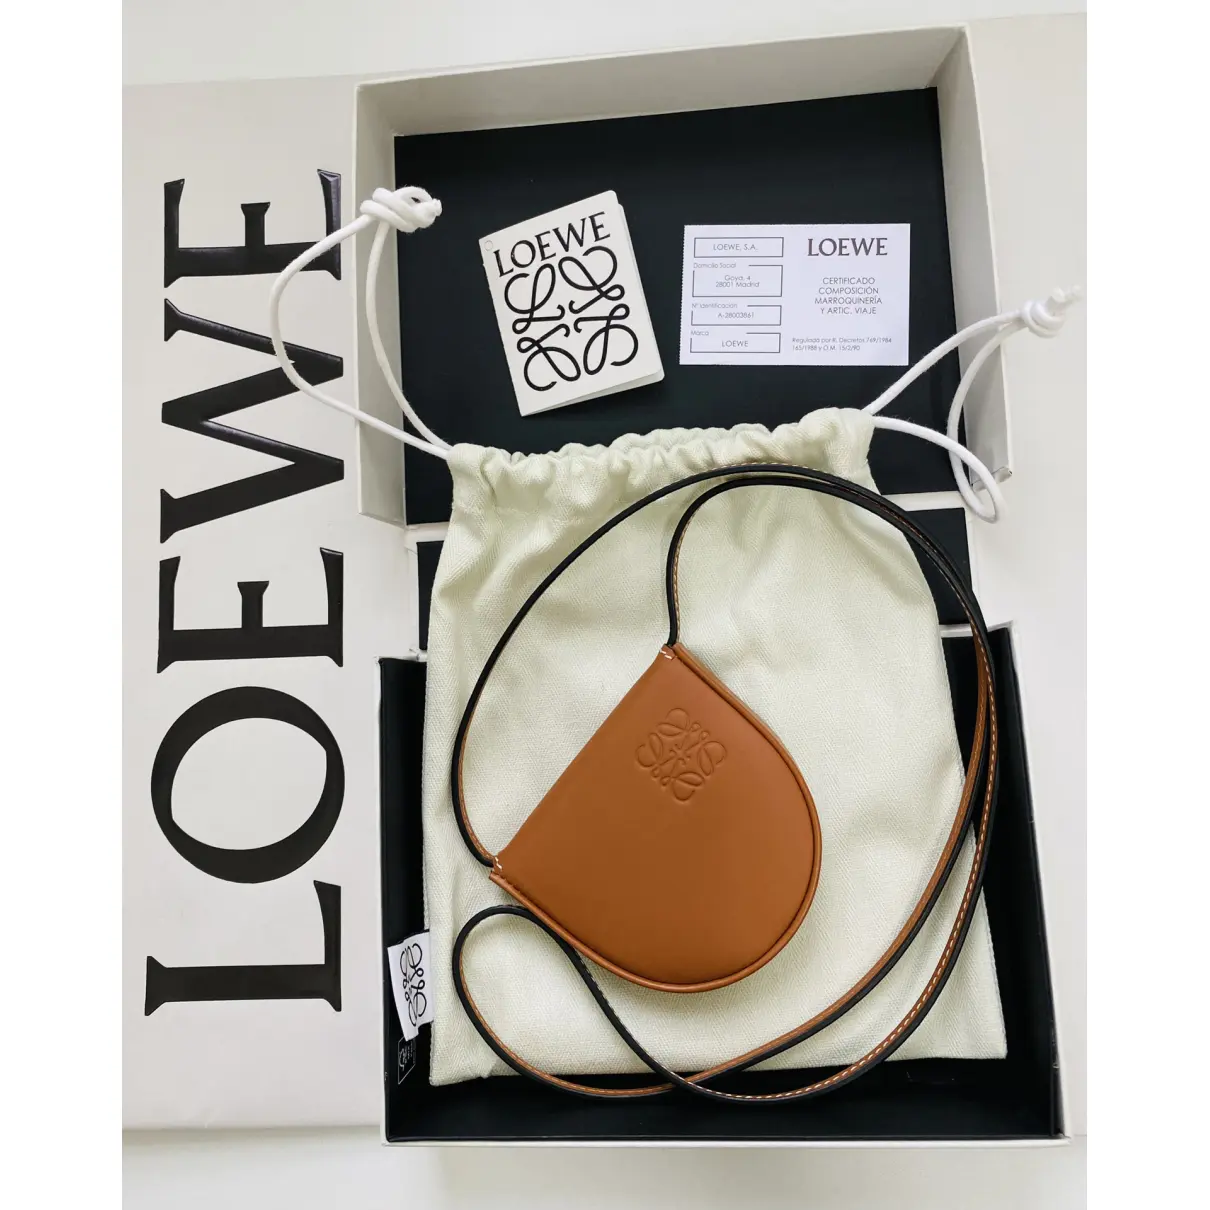 Heel leather crossbody bag Loewe